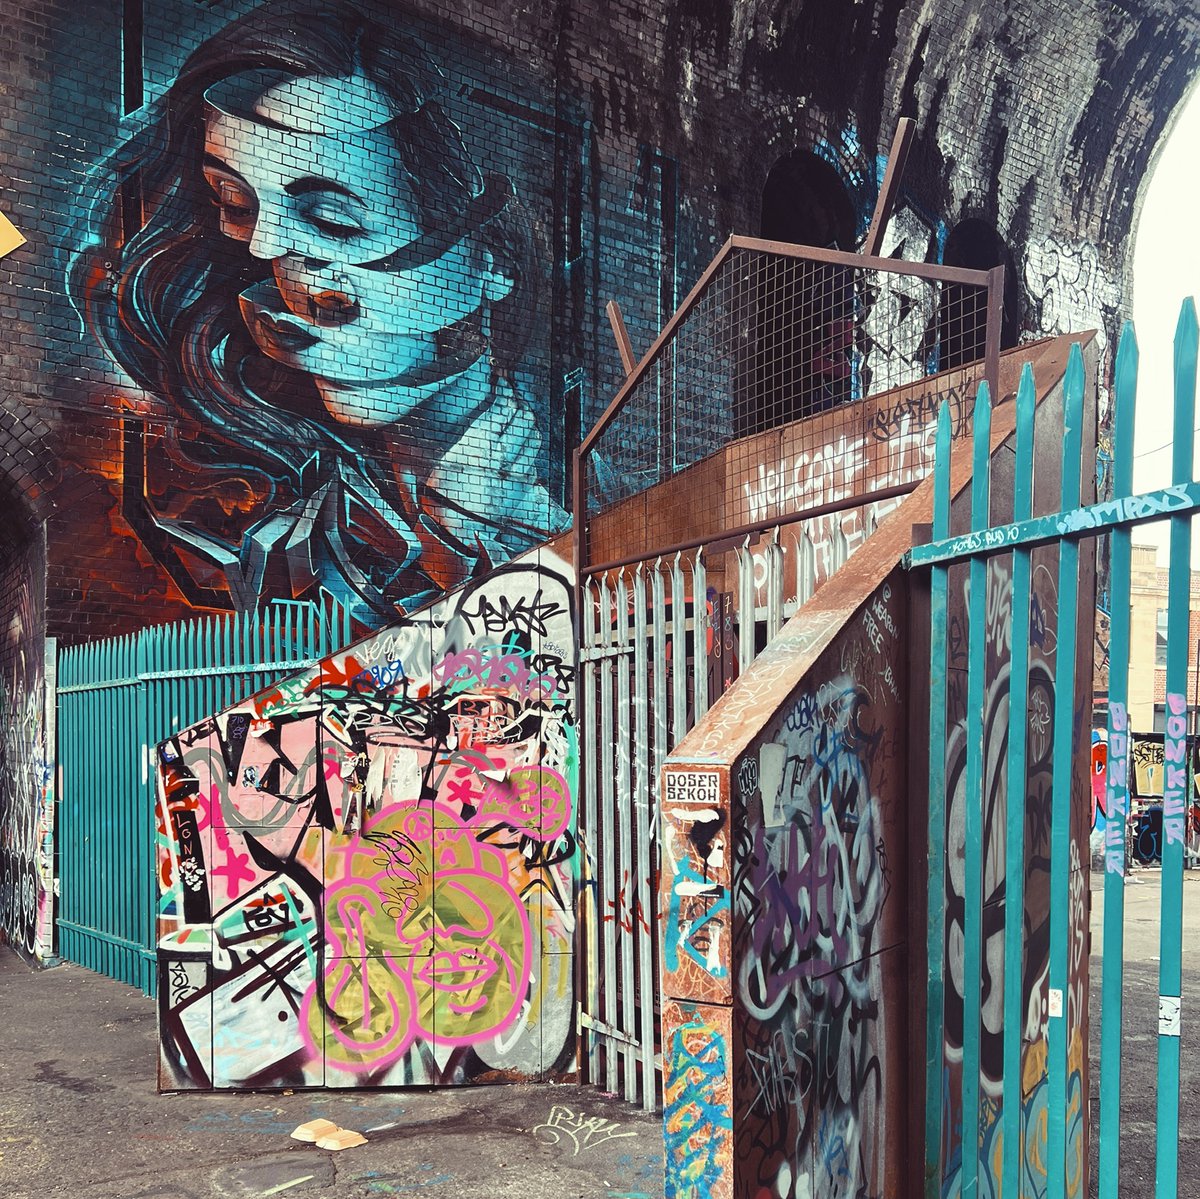 #WeAreAlumniUK Street art in Birmingham